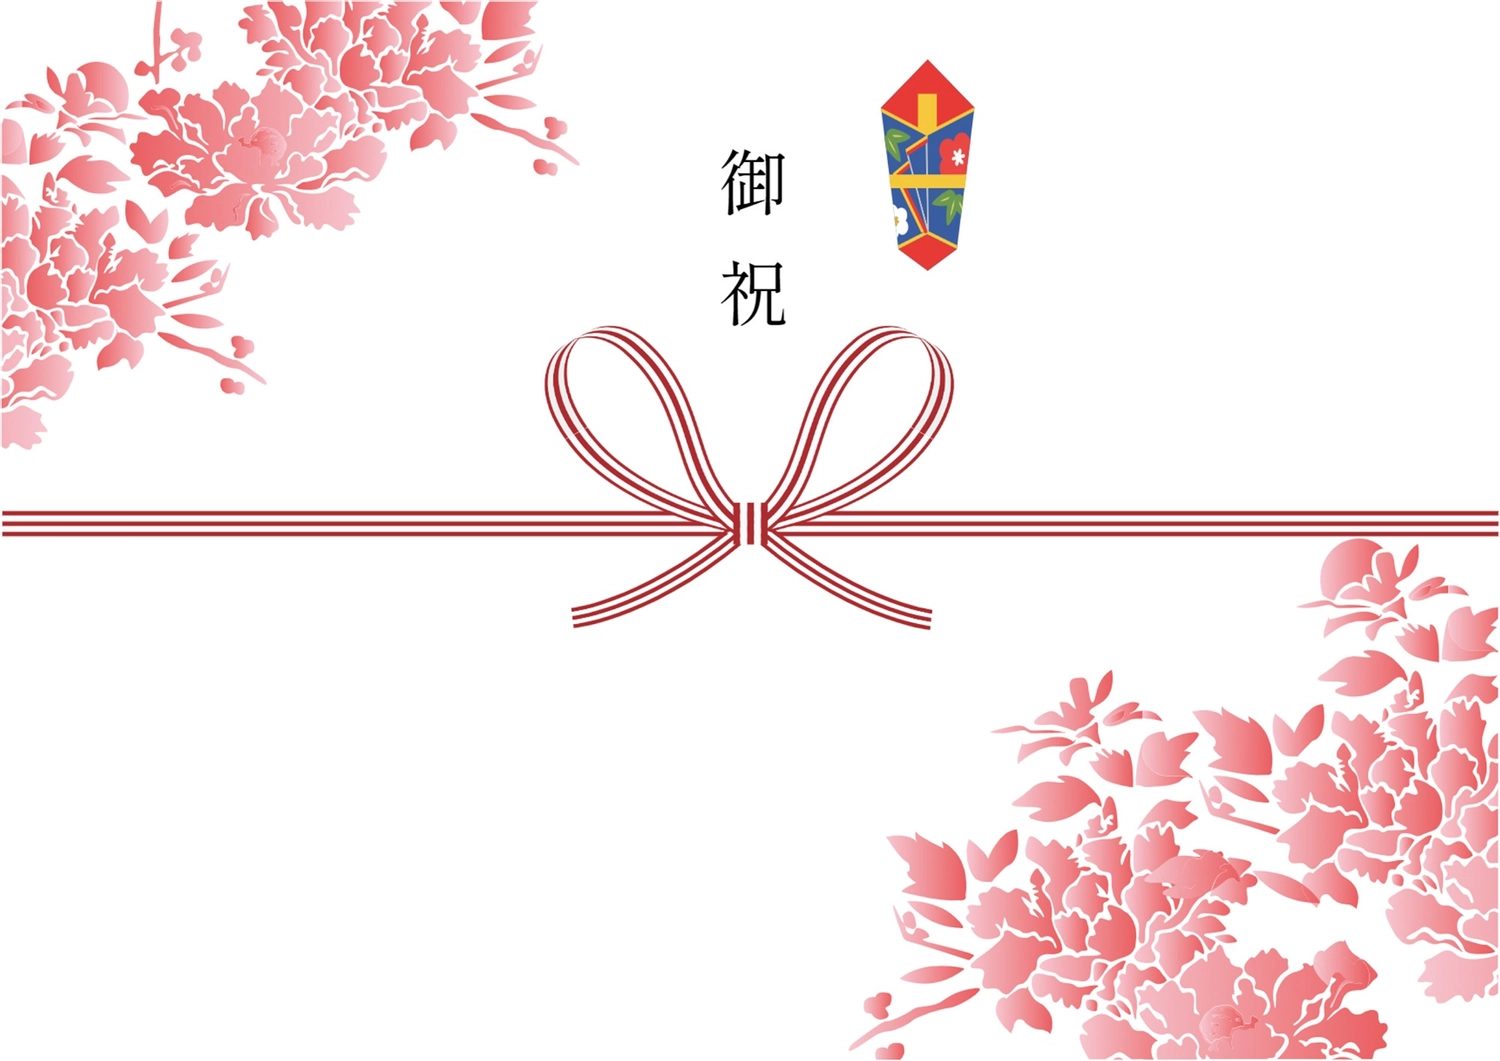 赤の花柄の入った御祝, noshigami, tặng quà, Khai mạc, Công cụ xúc tiến bán hàng mẫu